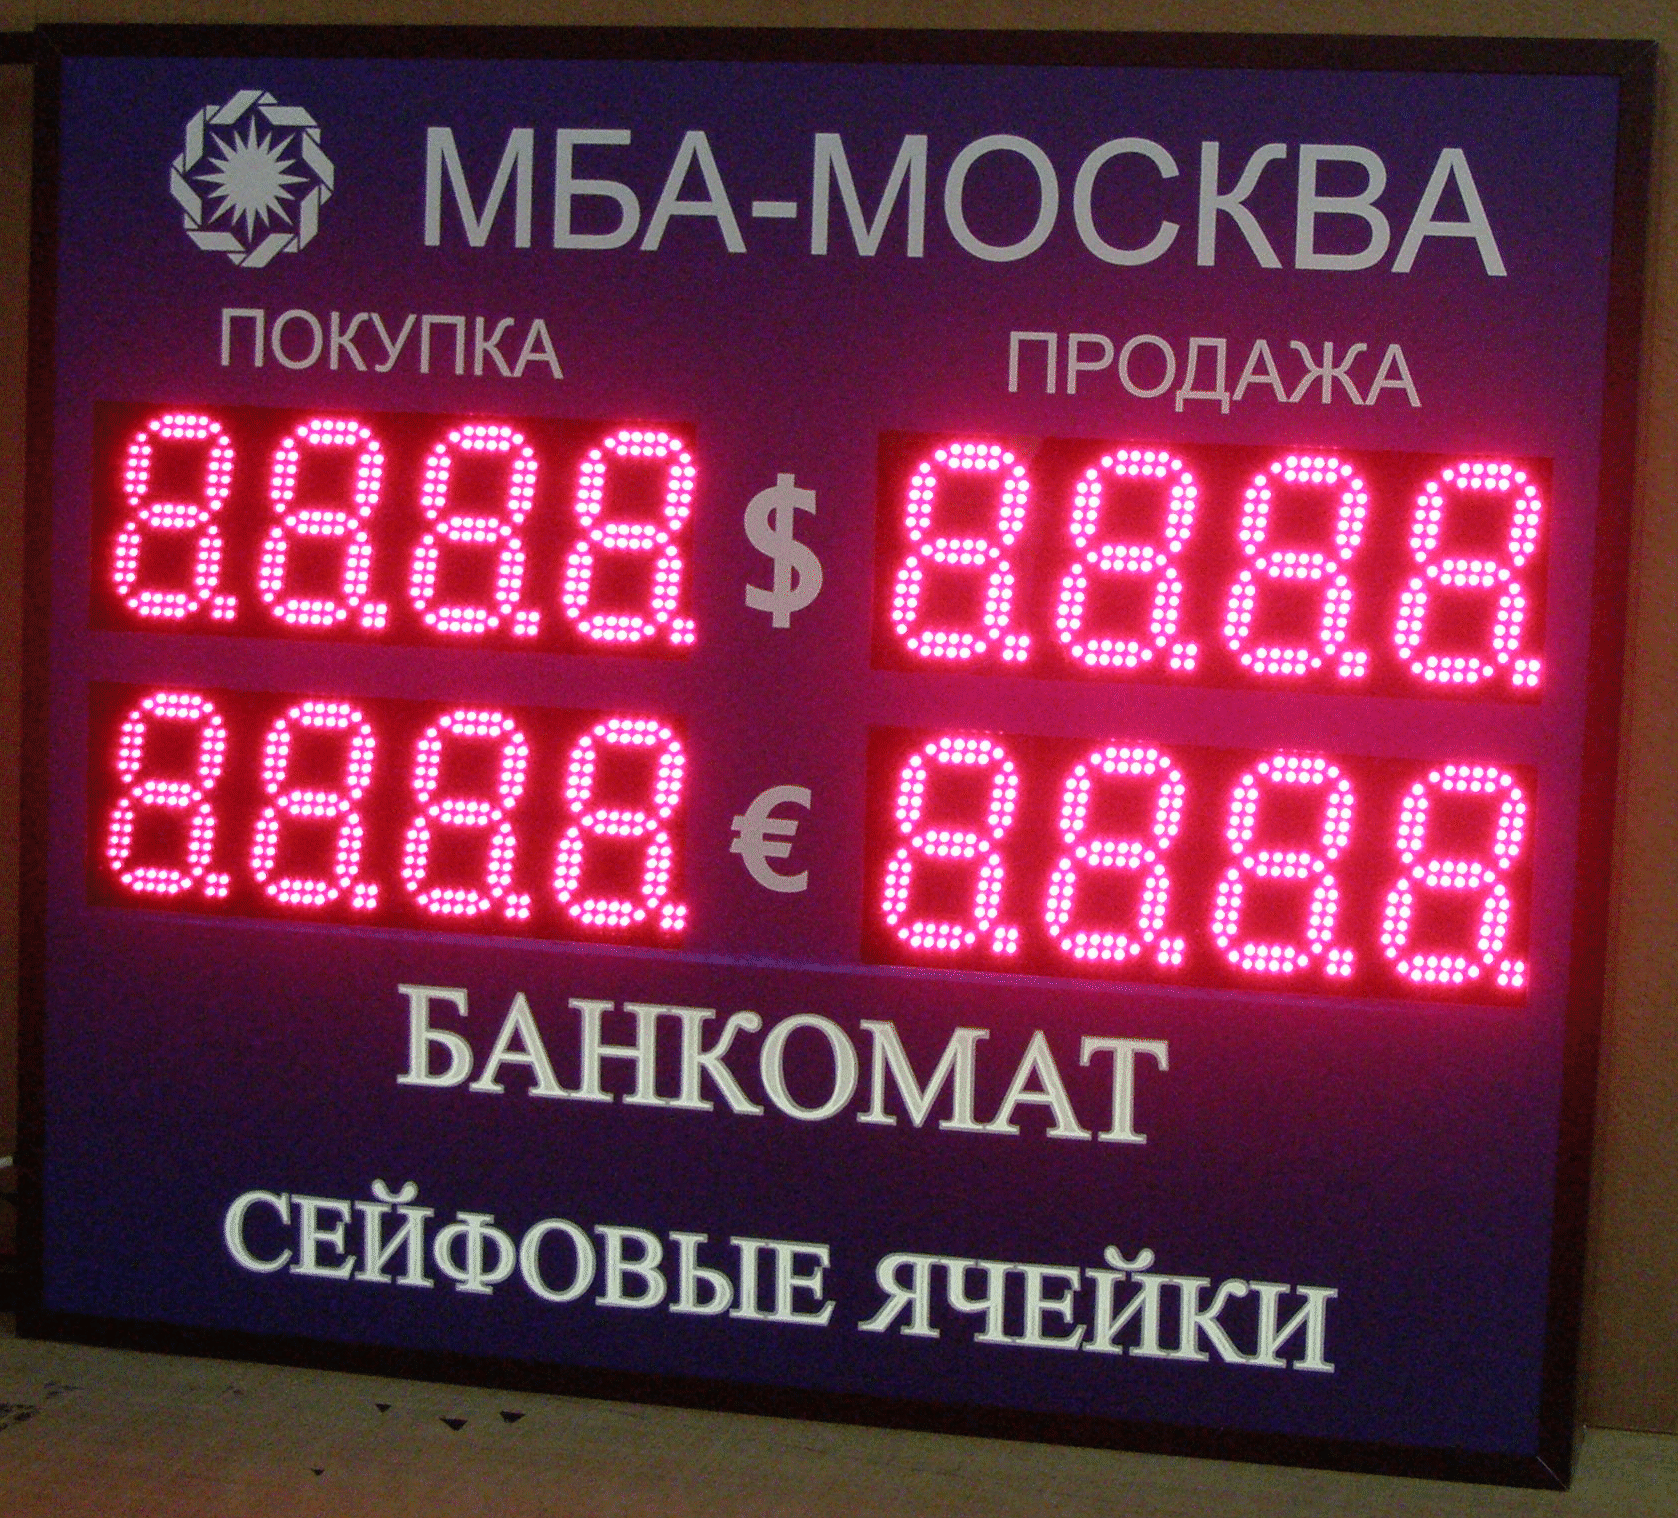 Табло обмена валют МБА-МОСКВА